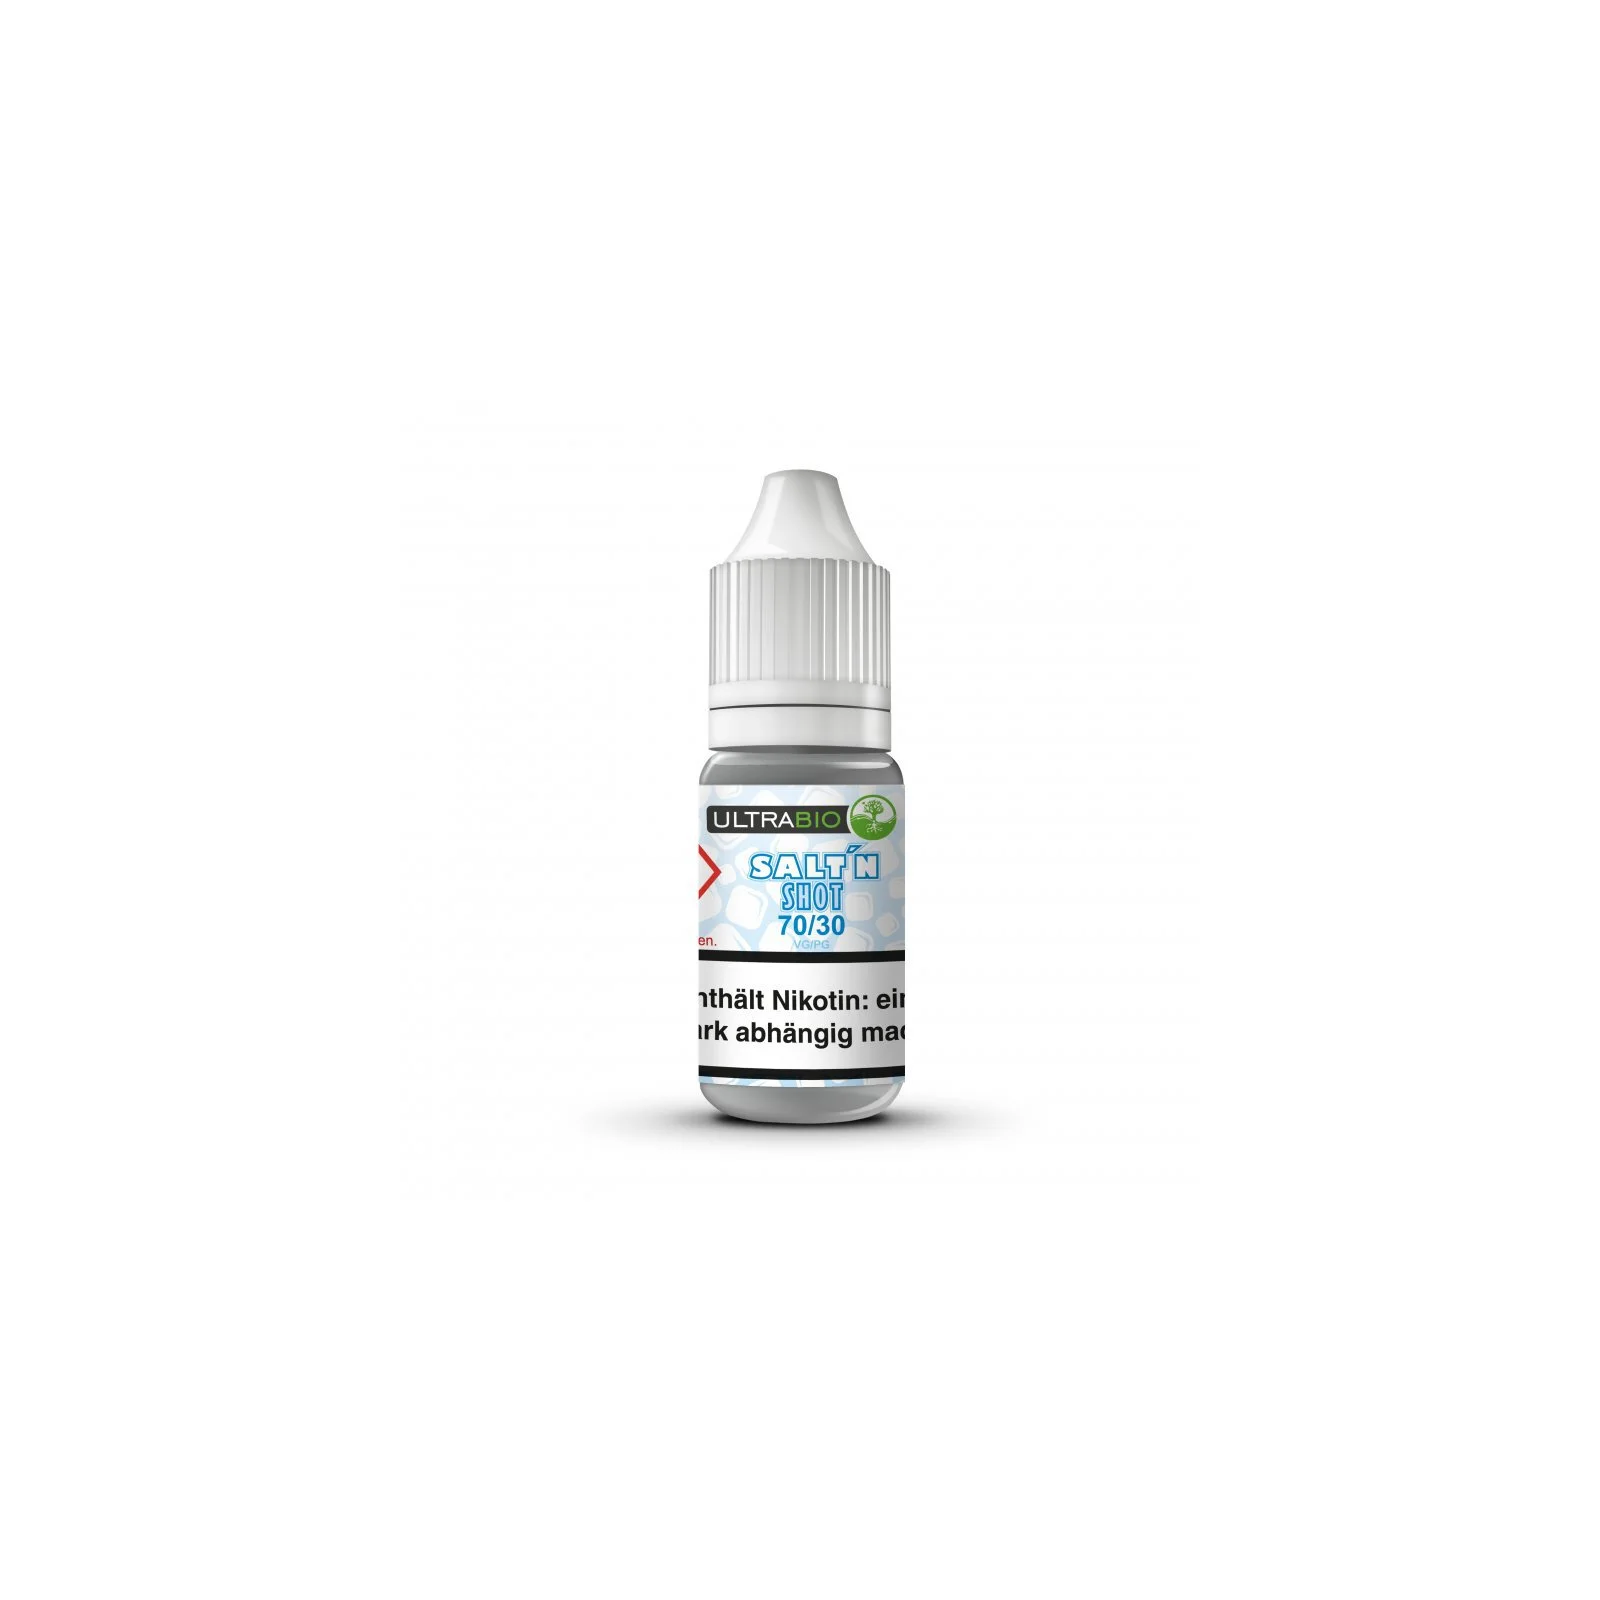 Ultrabio Nikotin Salz Shot 30PG/70VG 20mg/ml